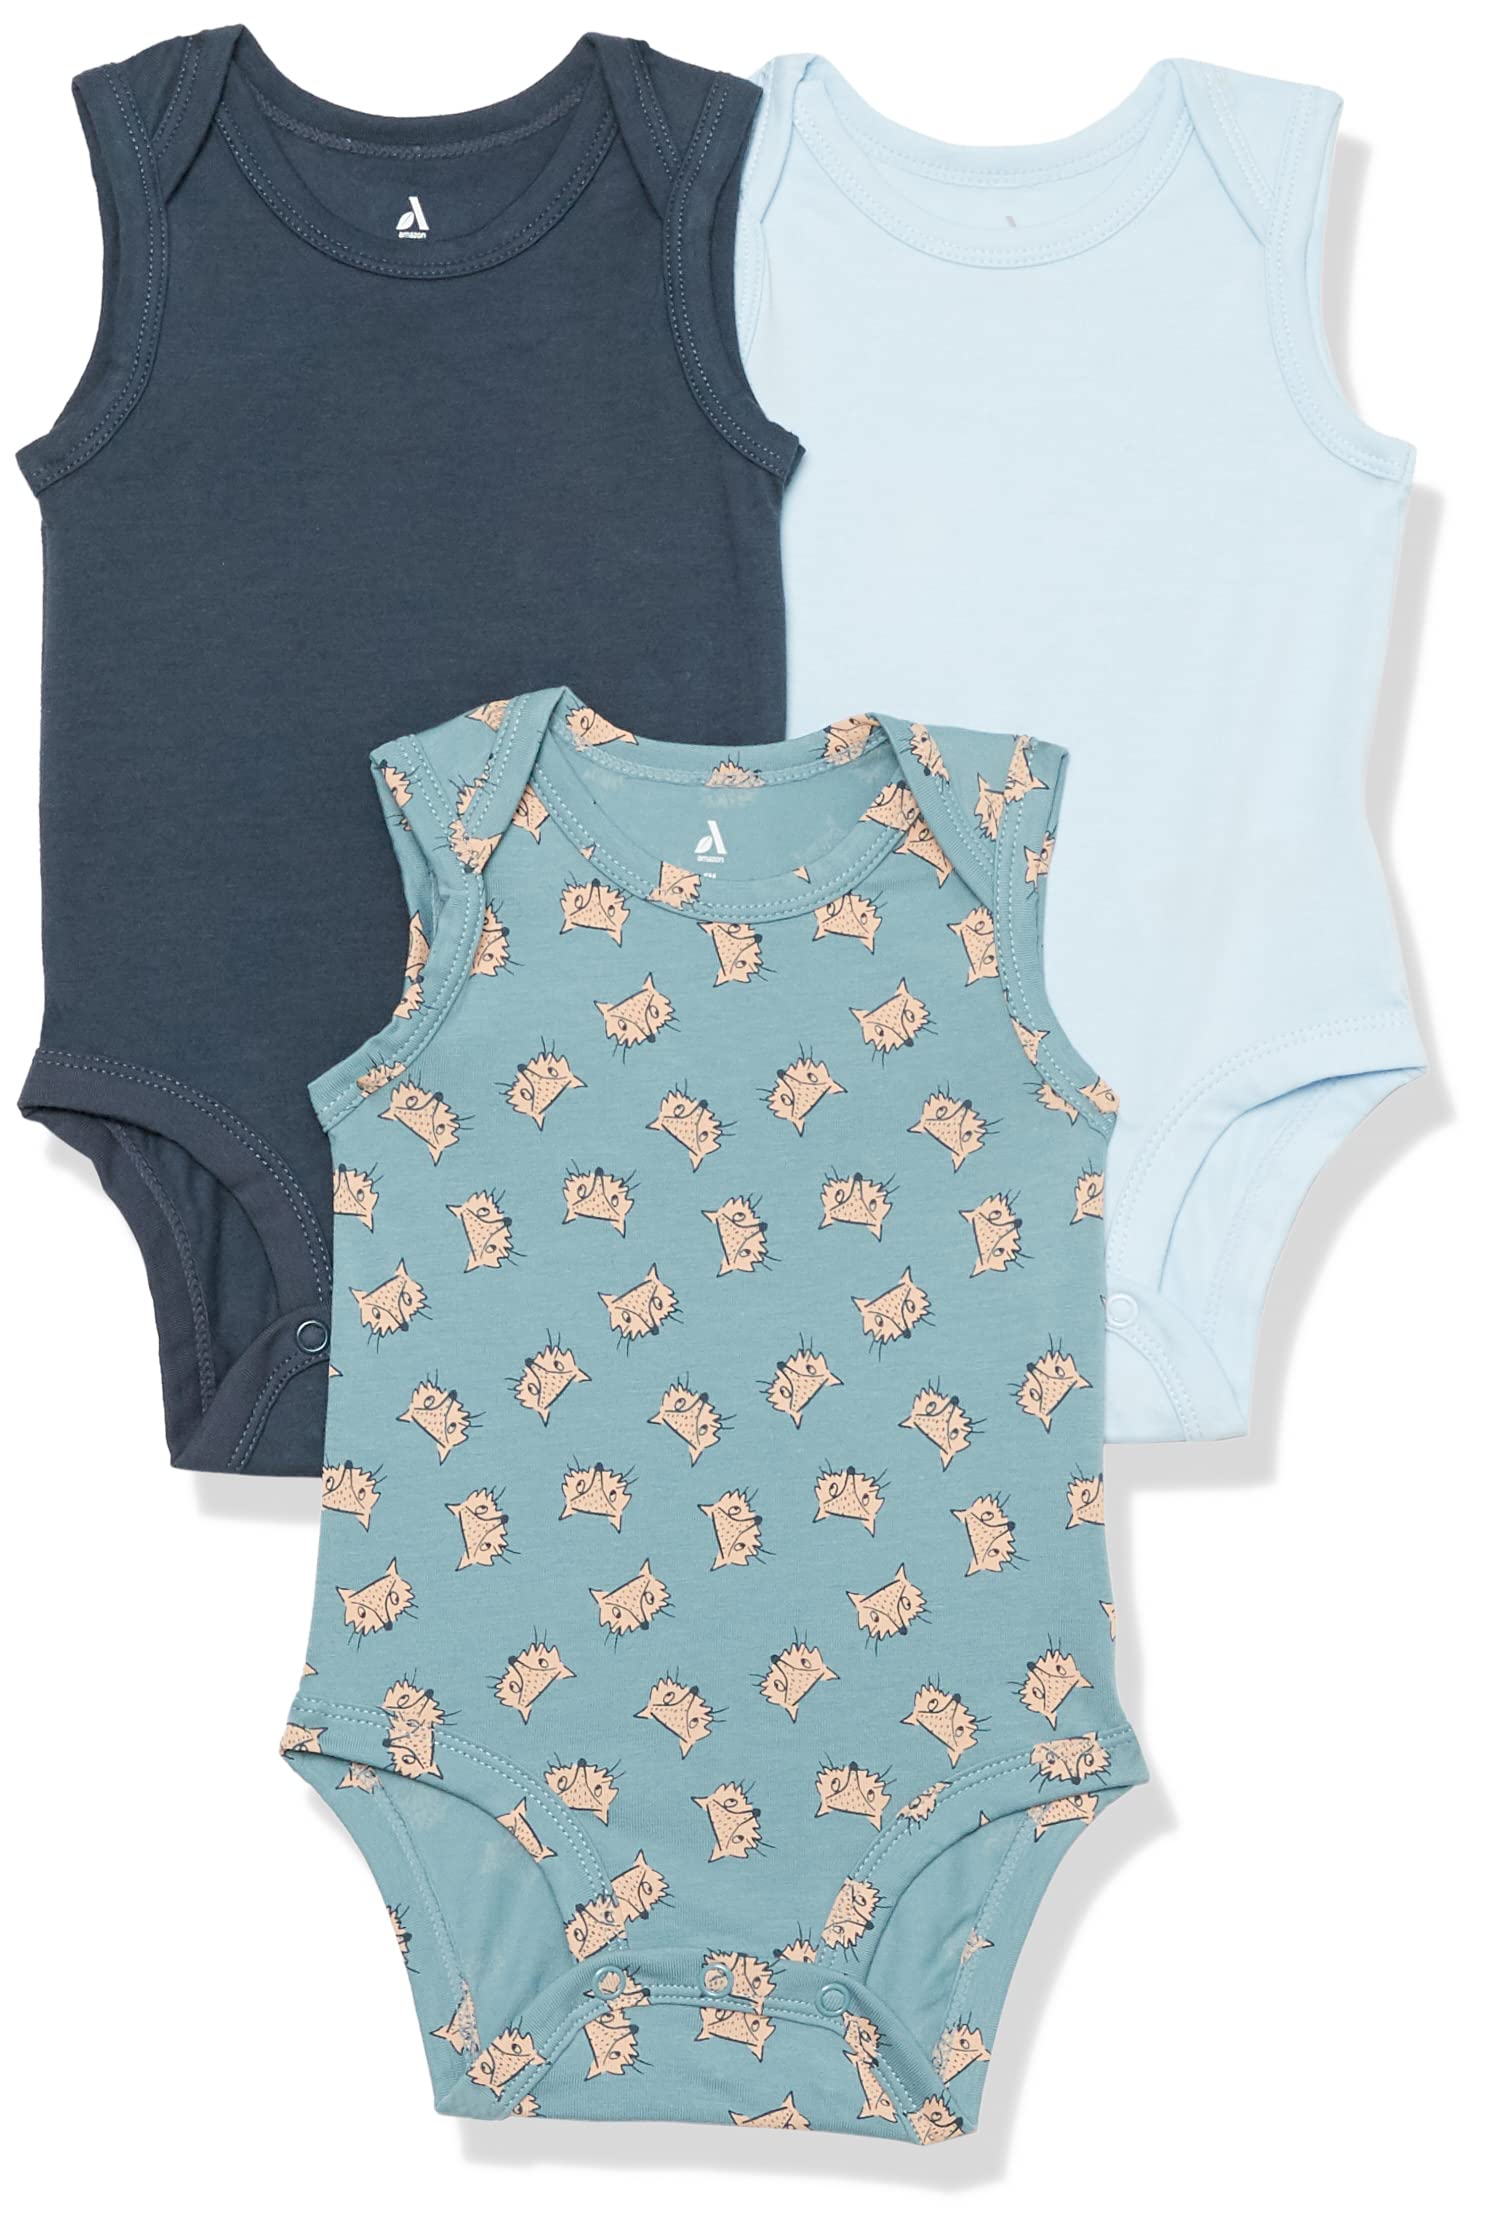 Amazon Essentials Unisex Baby Ärmelloser Body aus Baumwoll-Stretchjersey (zuvor Amazon Aware), 3er-Pack, Blassblau Fuchsaufdruck/Hellblau/Marineblau, 3-6 Monate